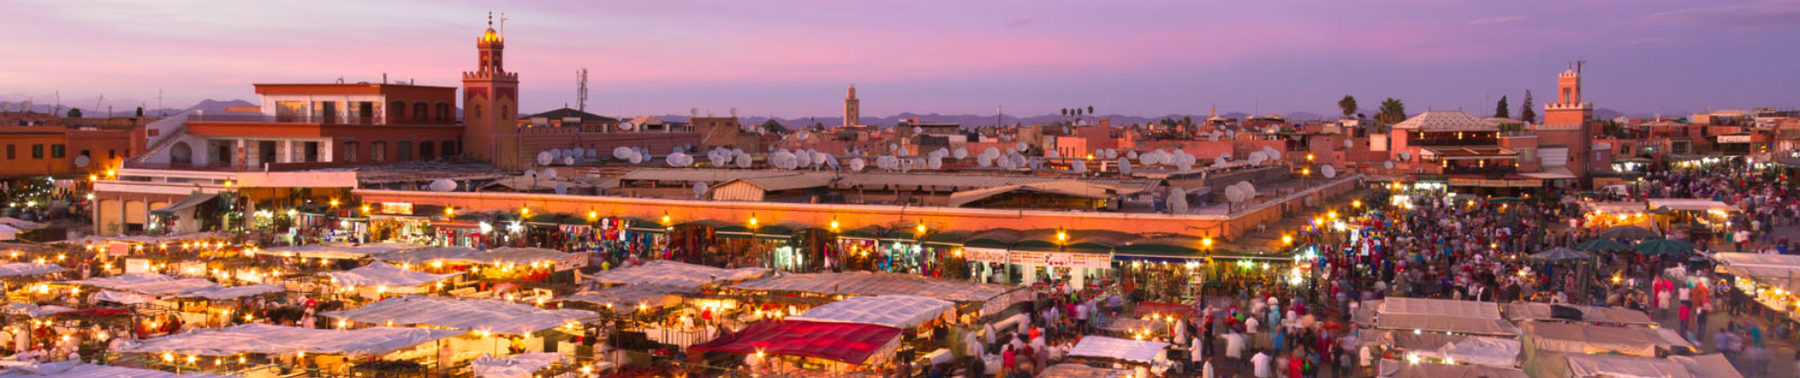 Medinas of Morocco Tour